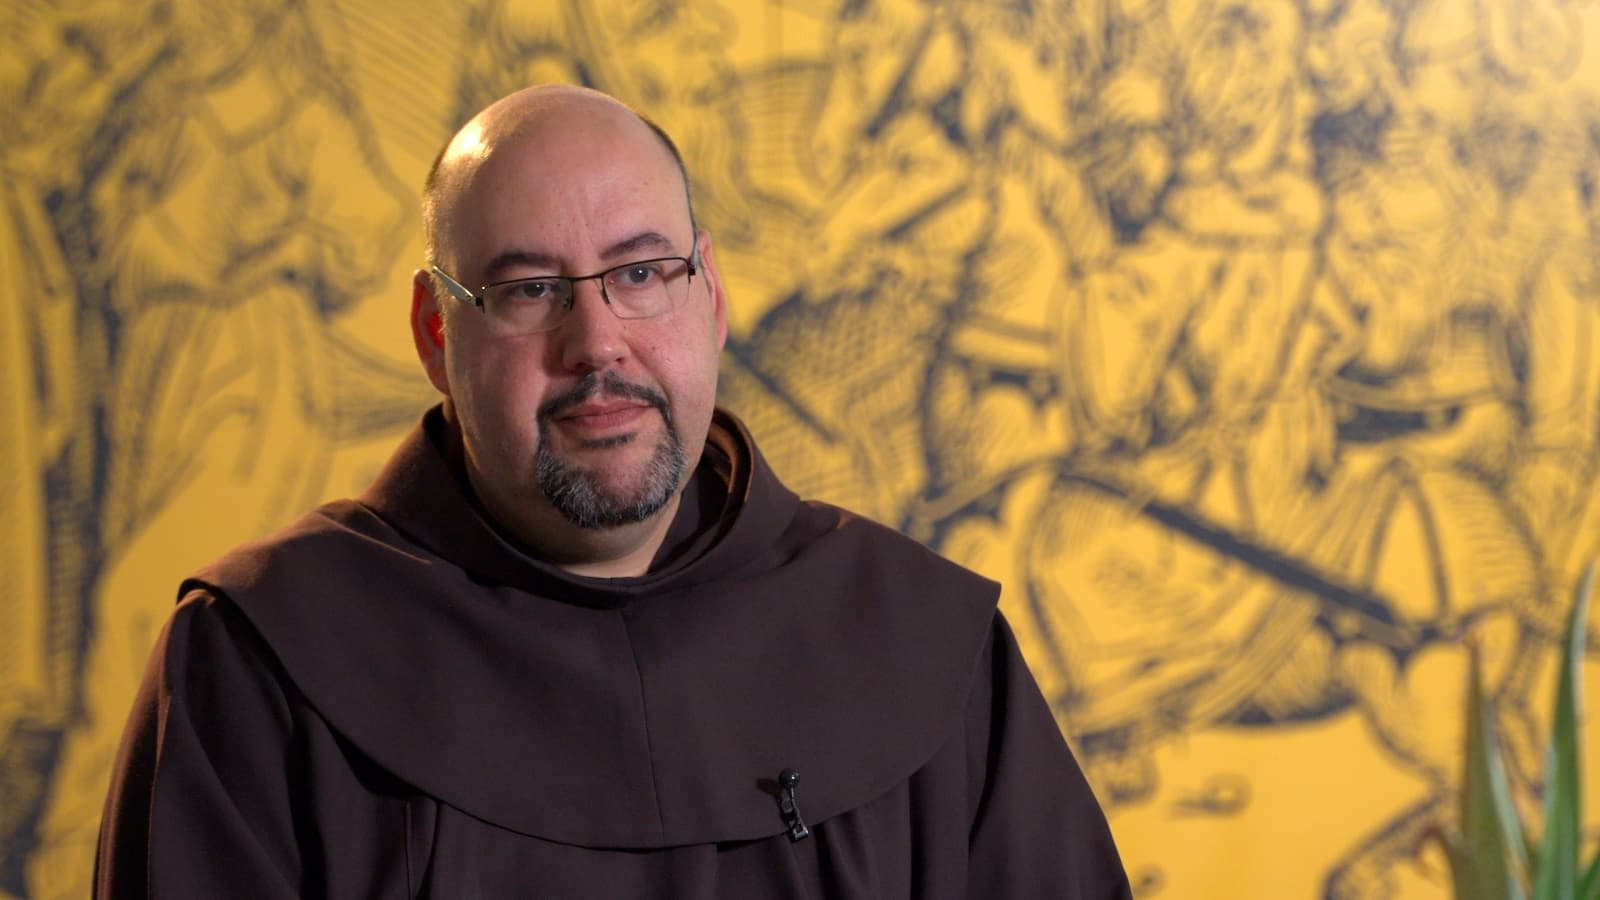 Fray Aquilino explica su experiencia como estudiante alejado de Dios ante el Santo Sepulcro